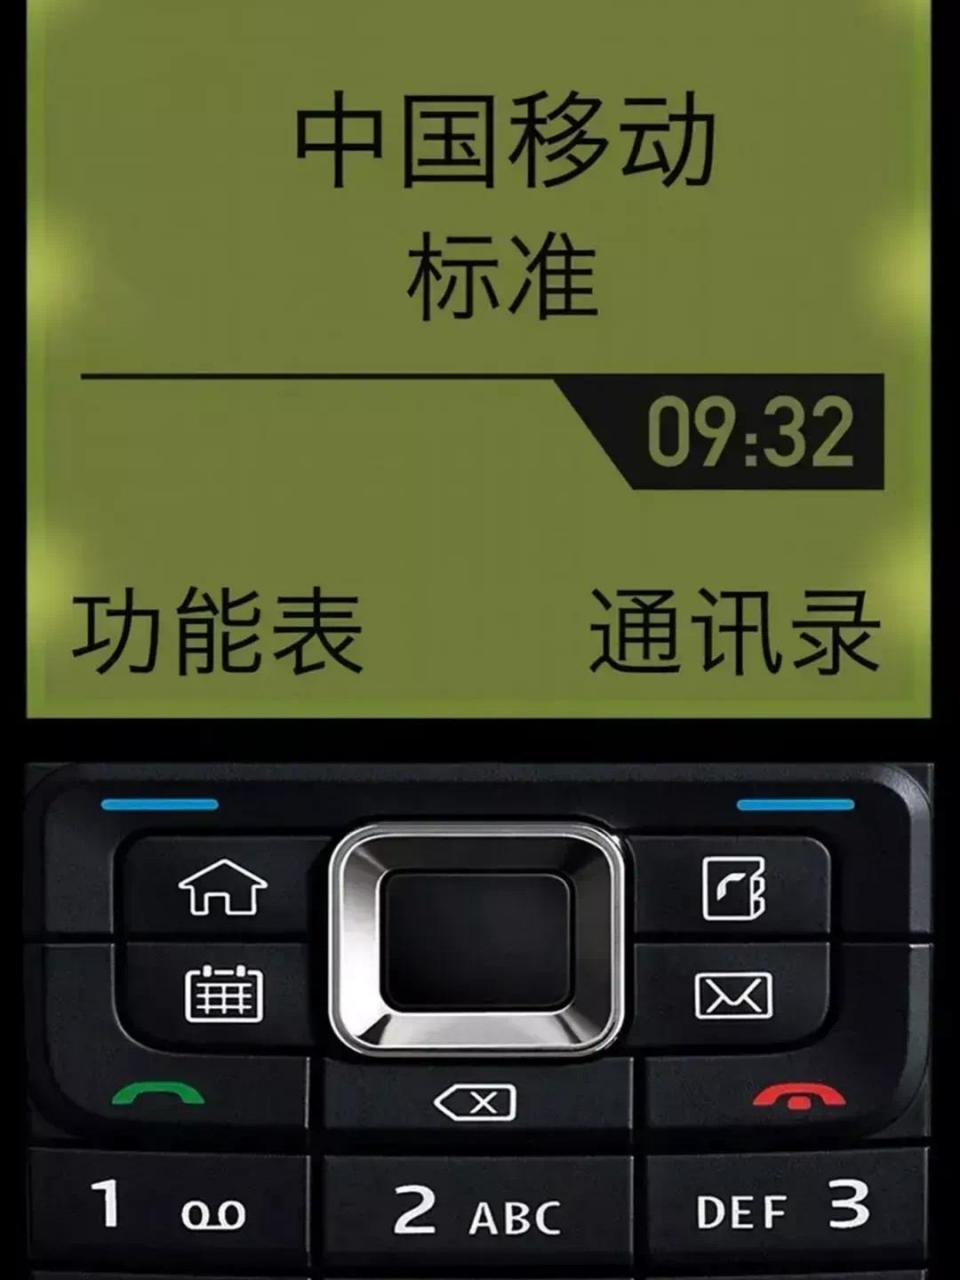 中国移动手机壁纸图标图片